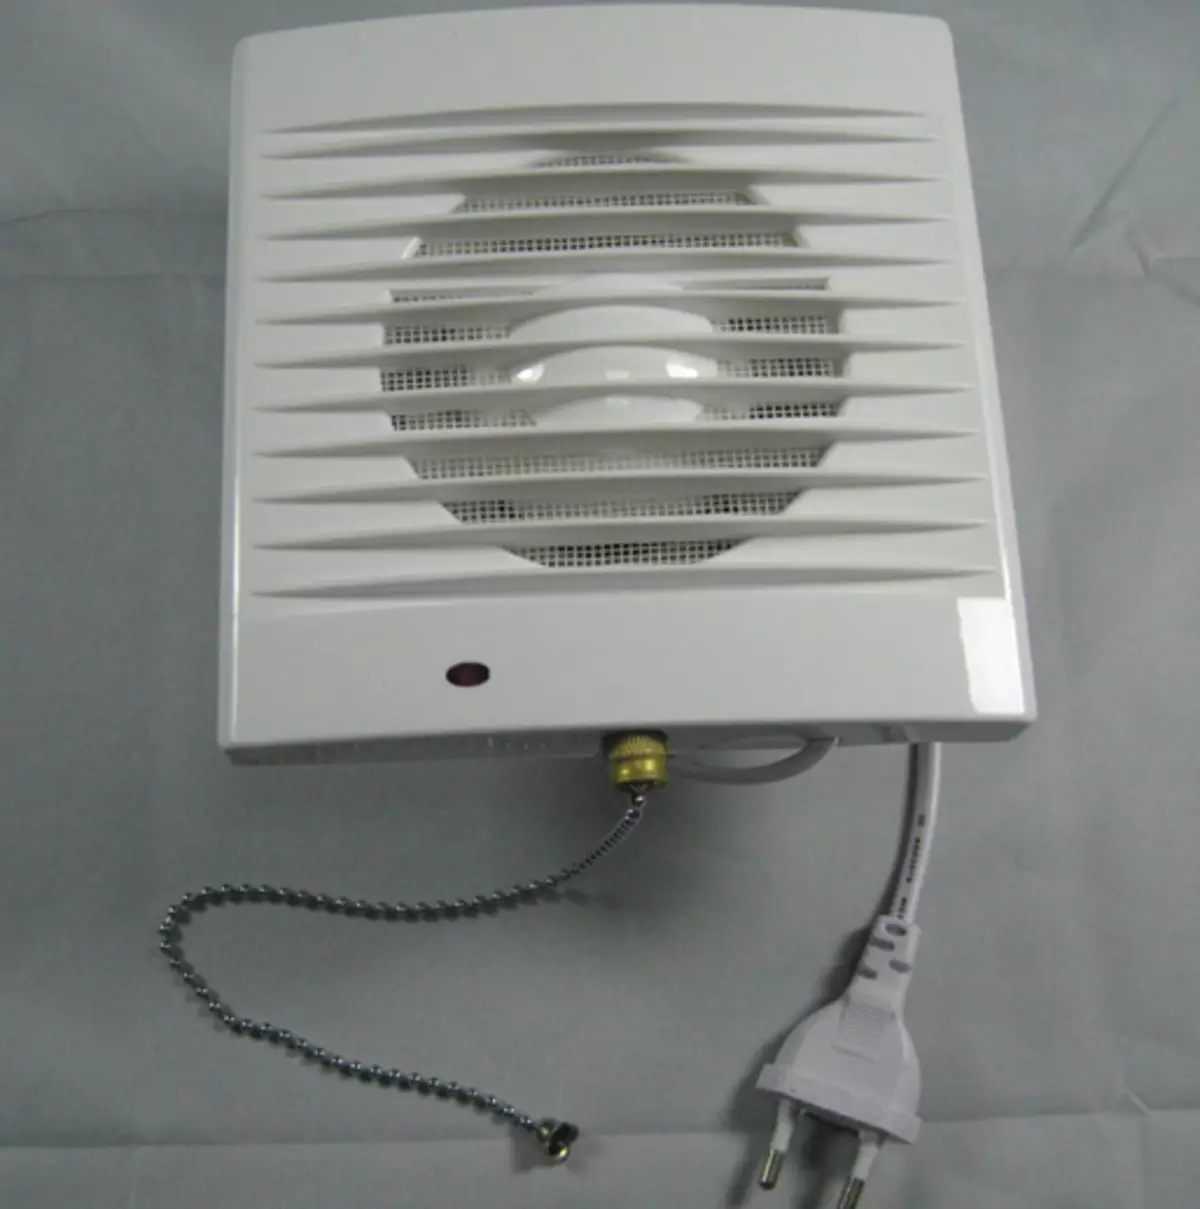 Ventilátor na toaletu: Výfukový ventilátor so spätným ventilom a tichým stropným ventilátorom pre kúpeľne, iné možnosti. Čo je lepšie vybrať si model? 10469_30